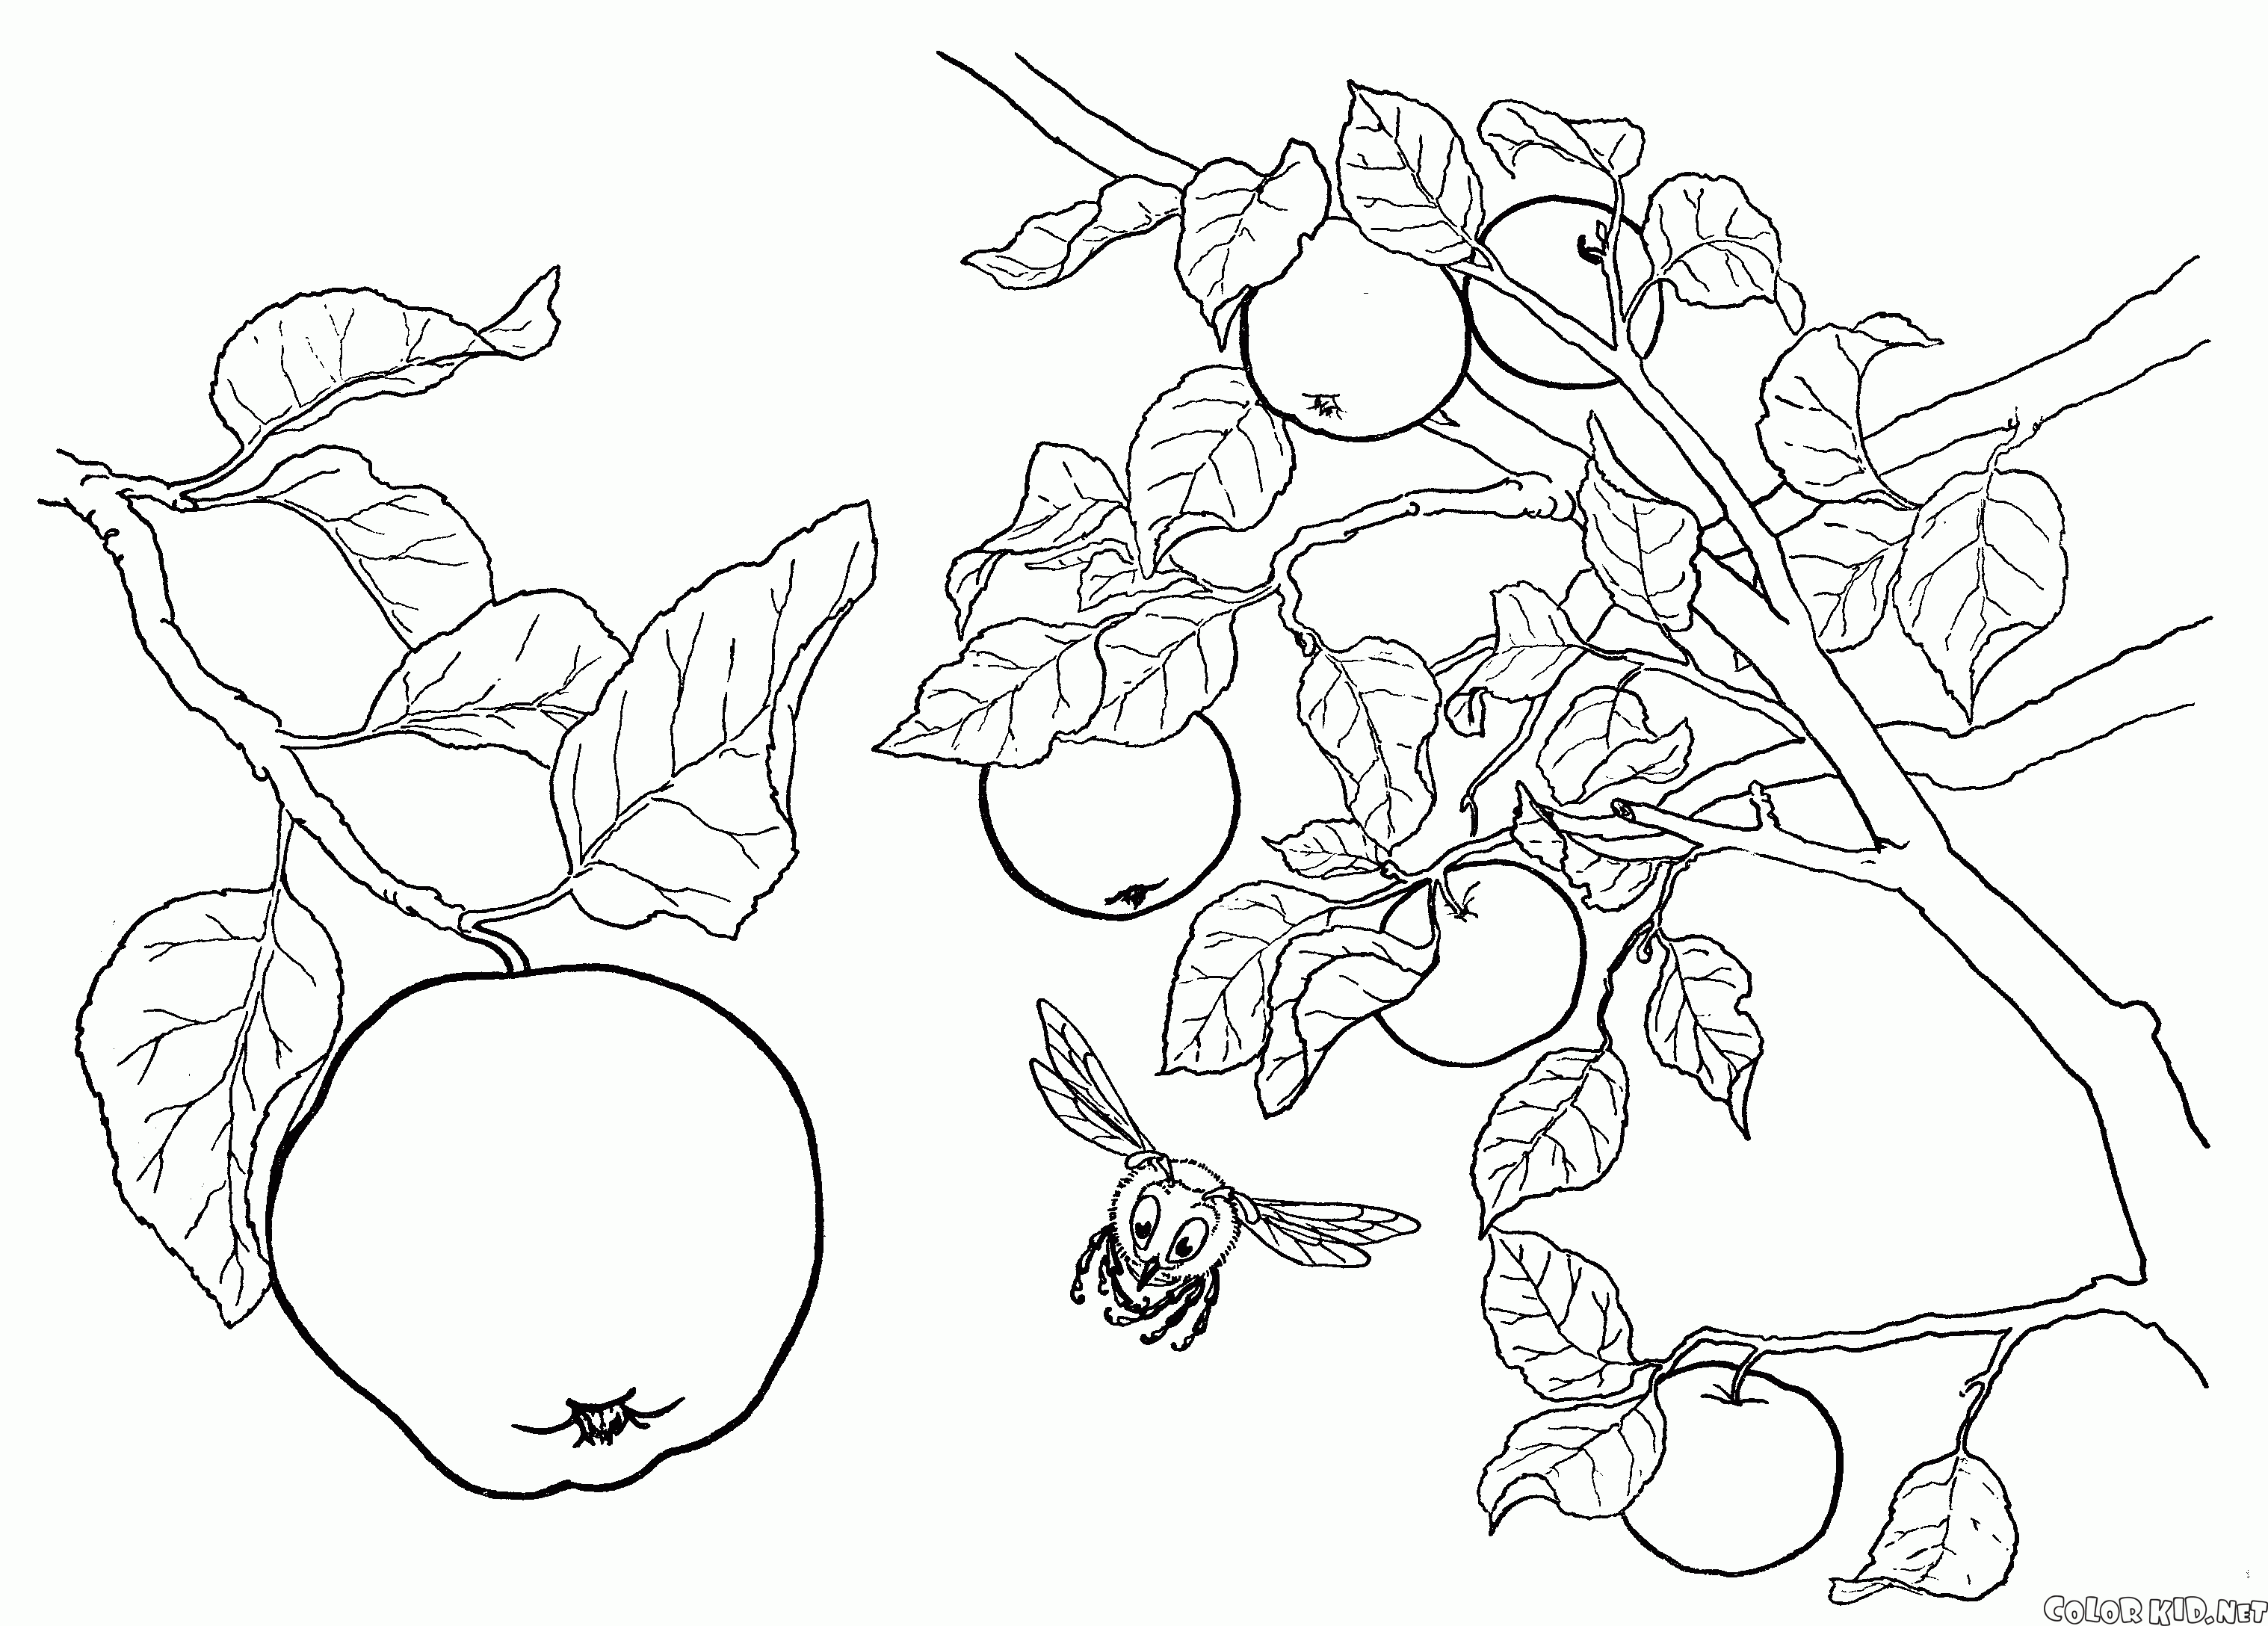 Apple tree fruits